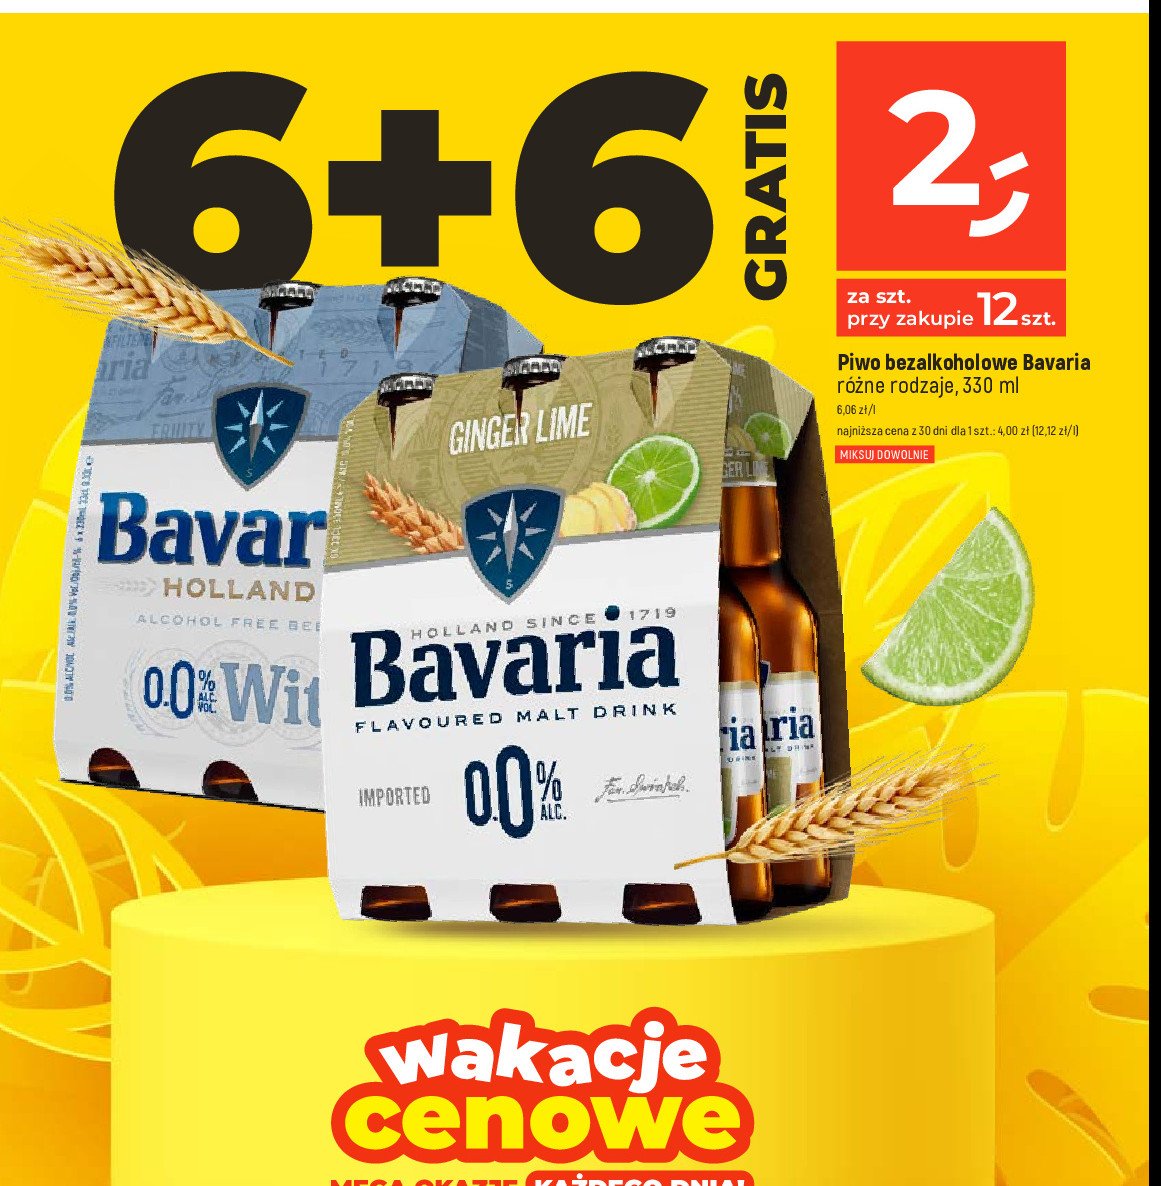 Piwo Bavaria wit promocja